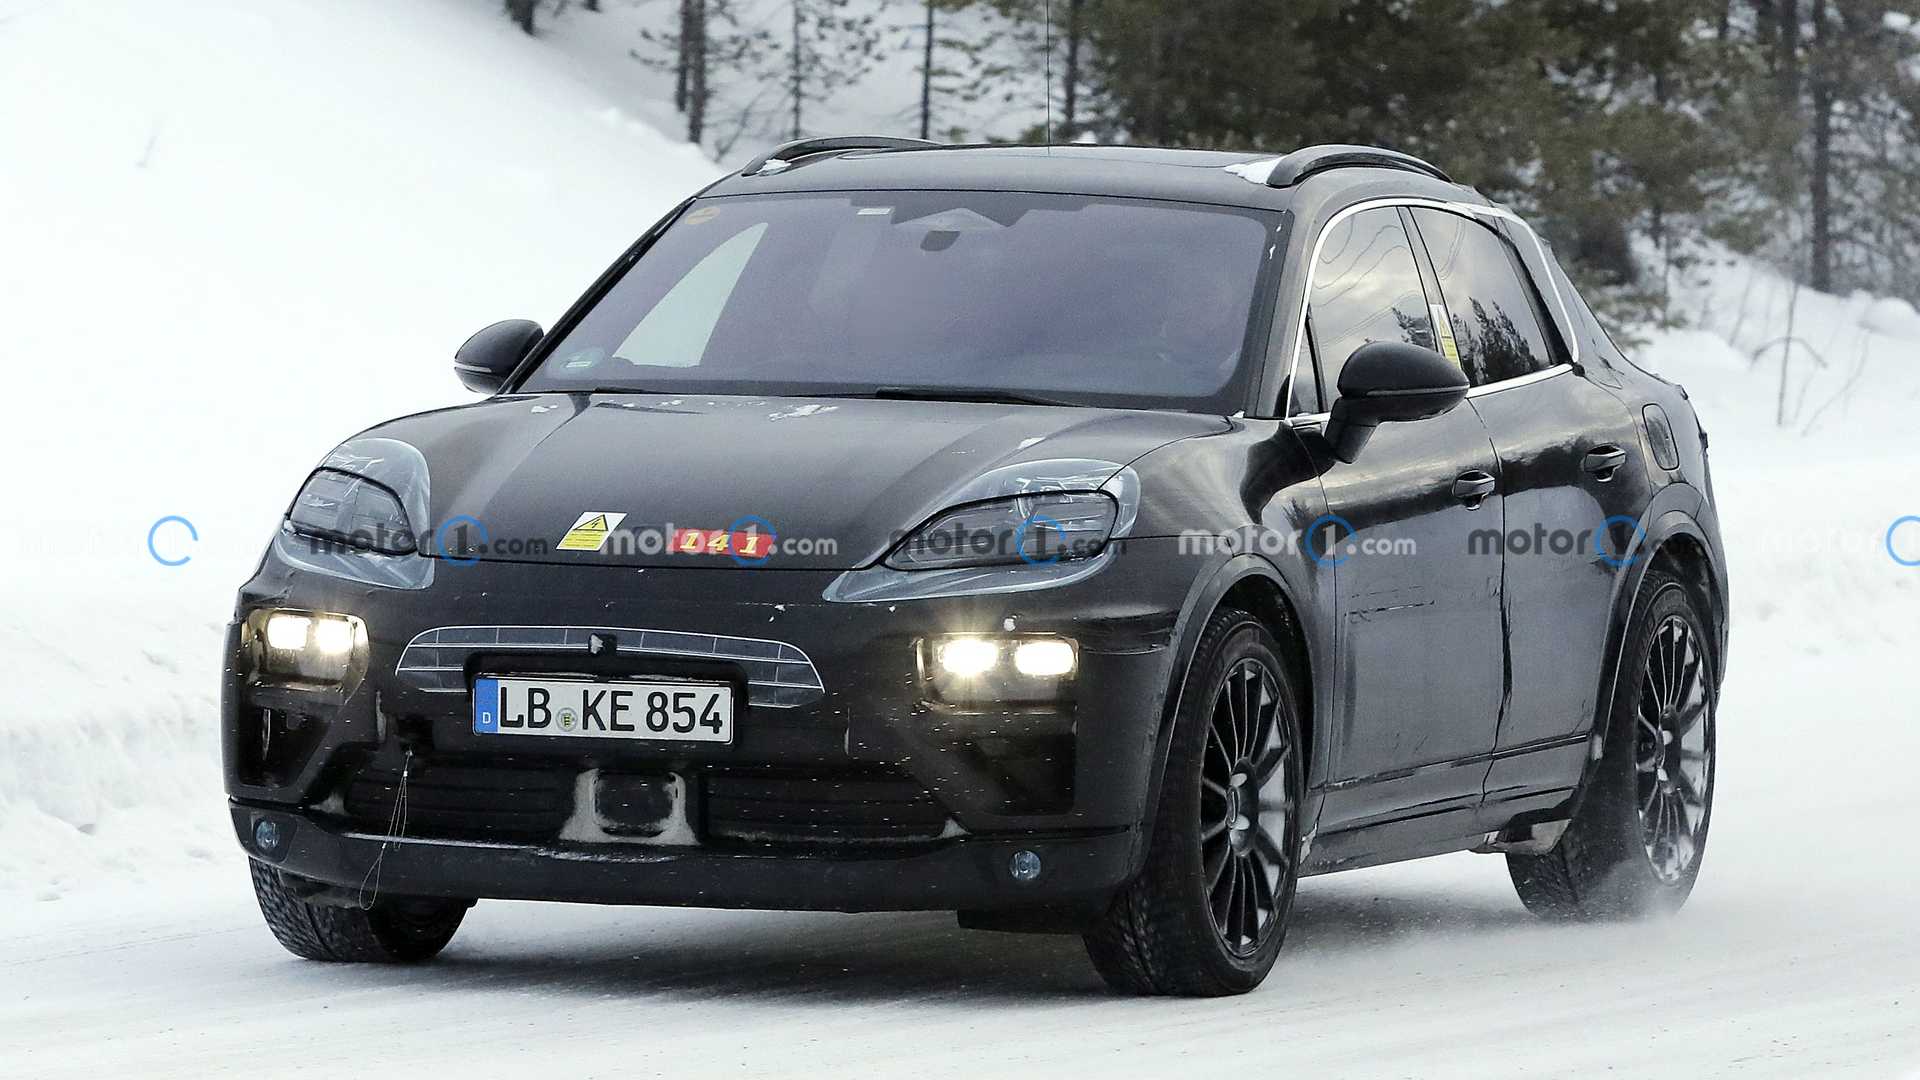 Porsche Macan EV ถูกจับภาพได้ในขณะวิ่งทดสอบบนอากาศที่หนาวเหน็บ